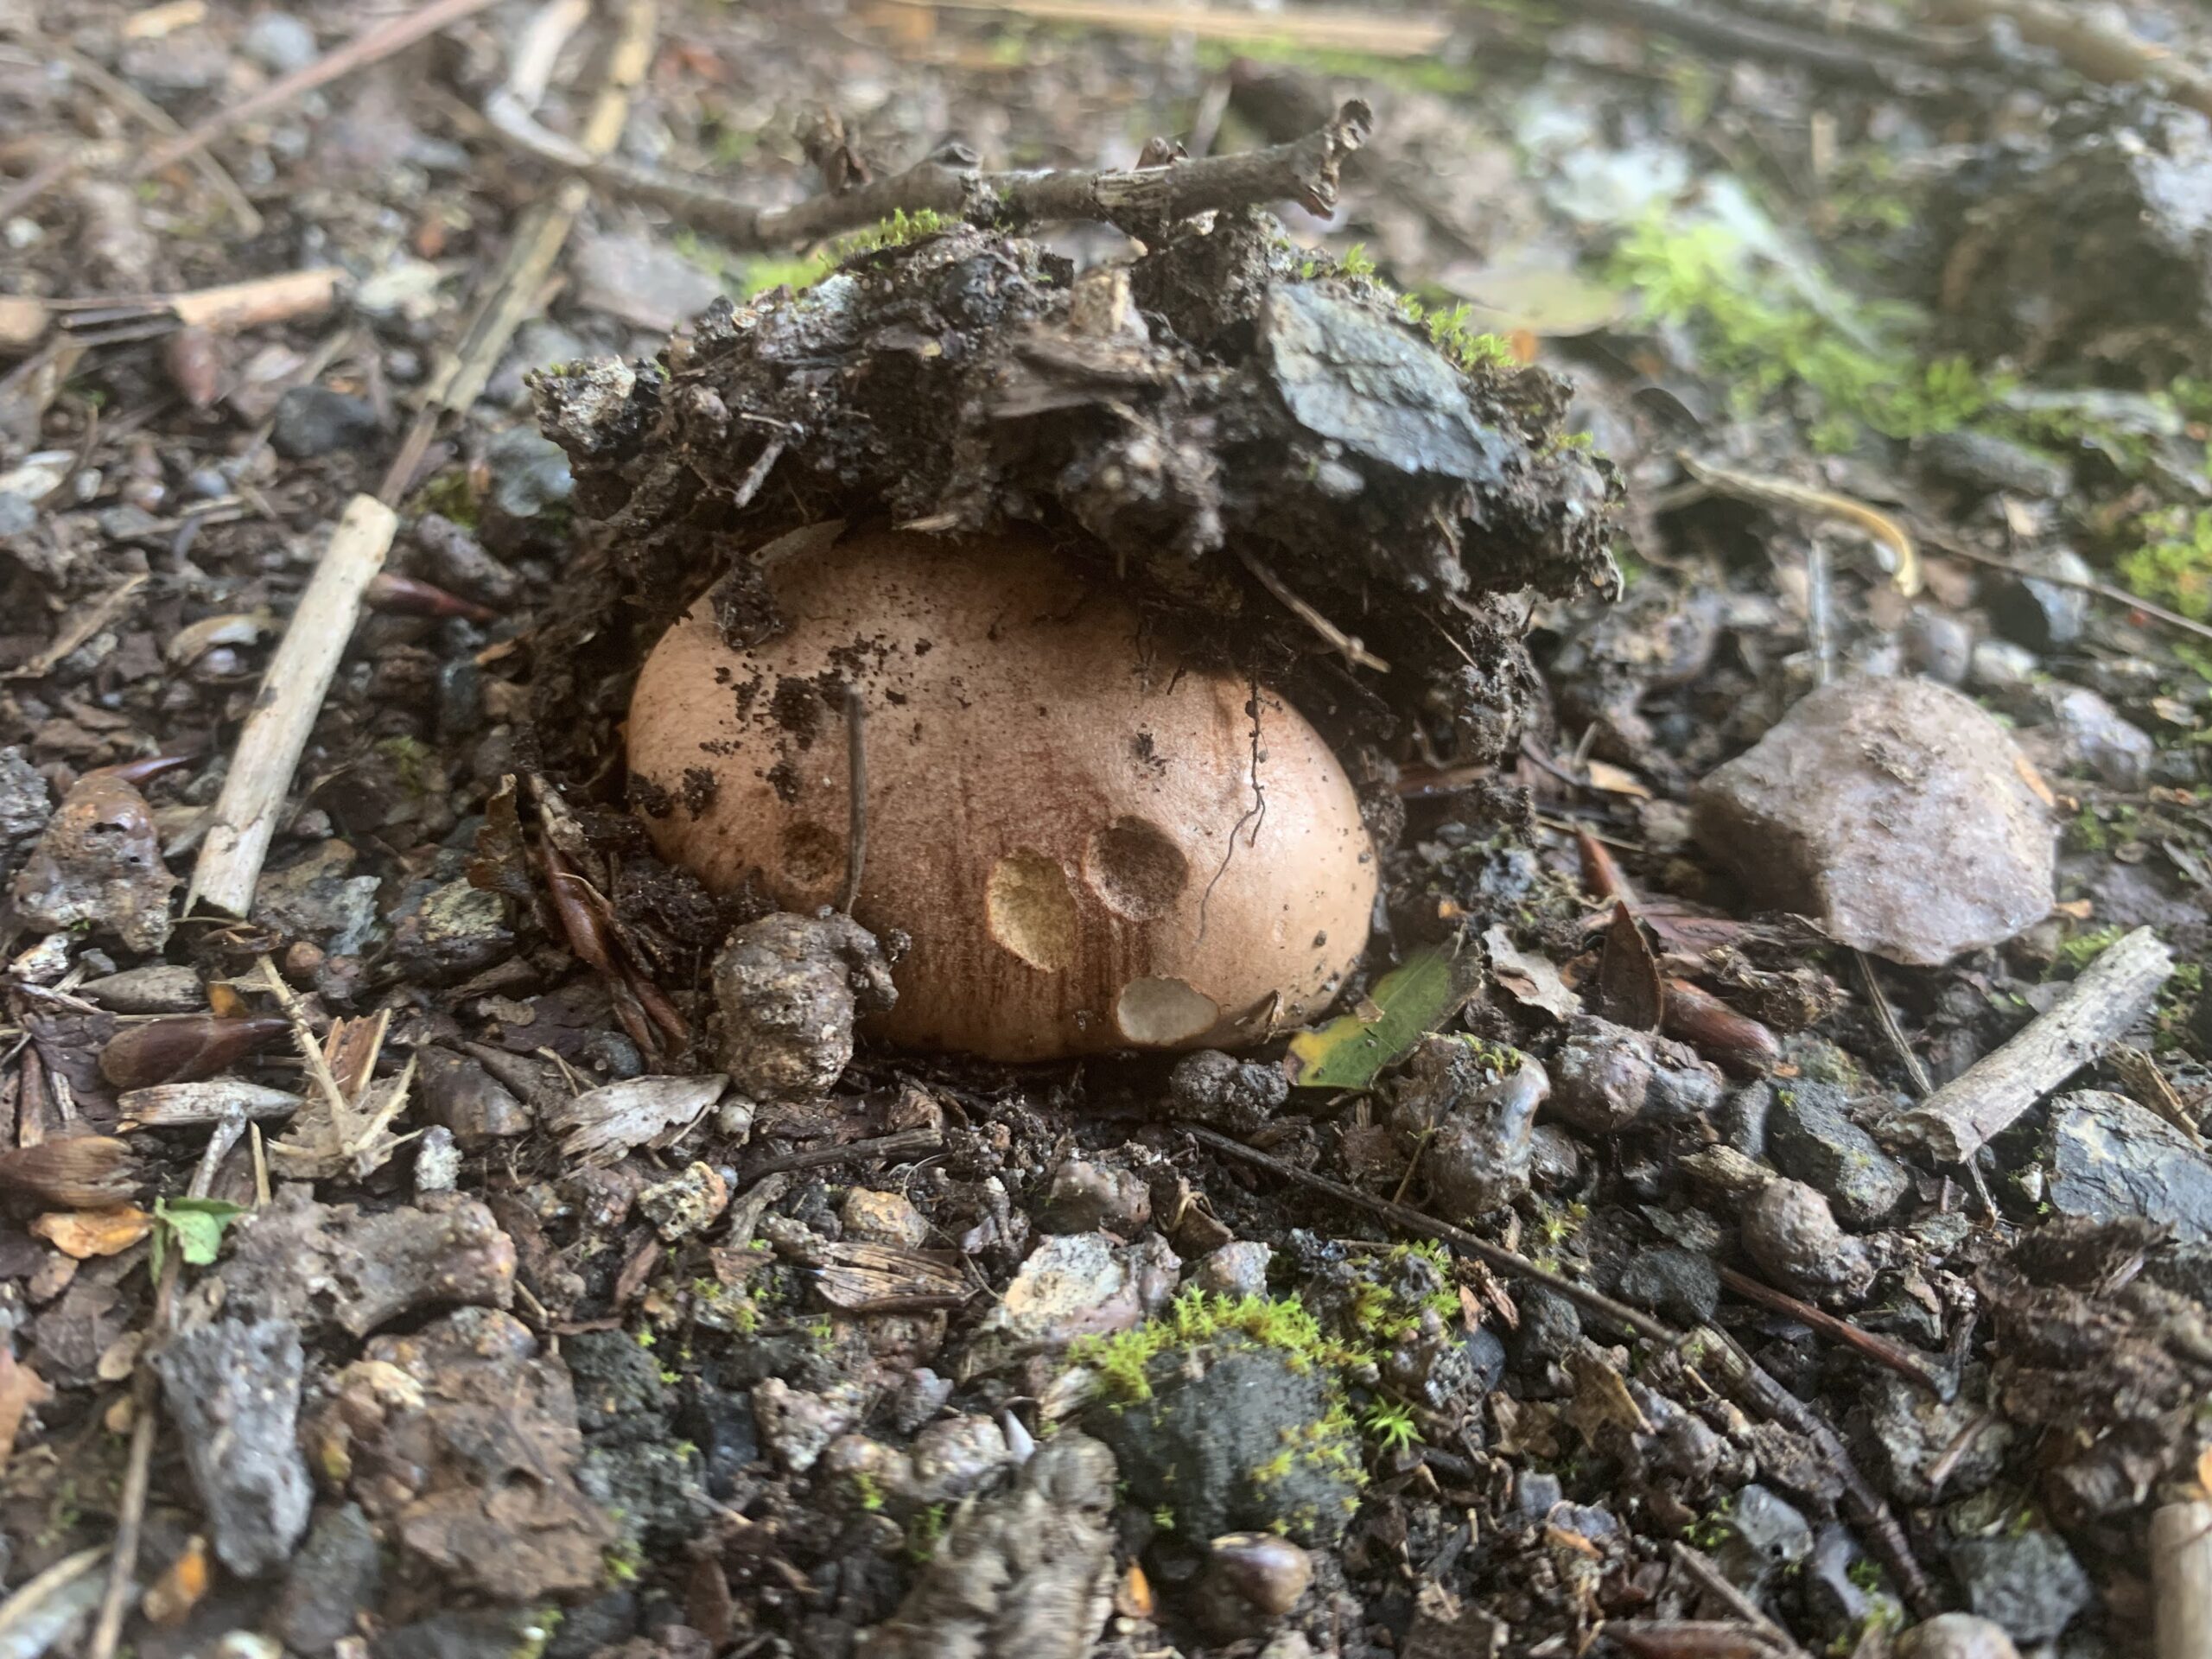 brown mushroom pushing through the soil